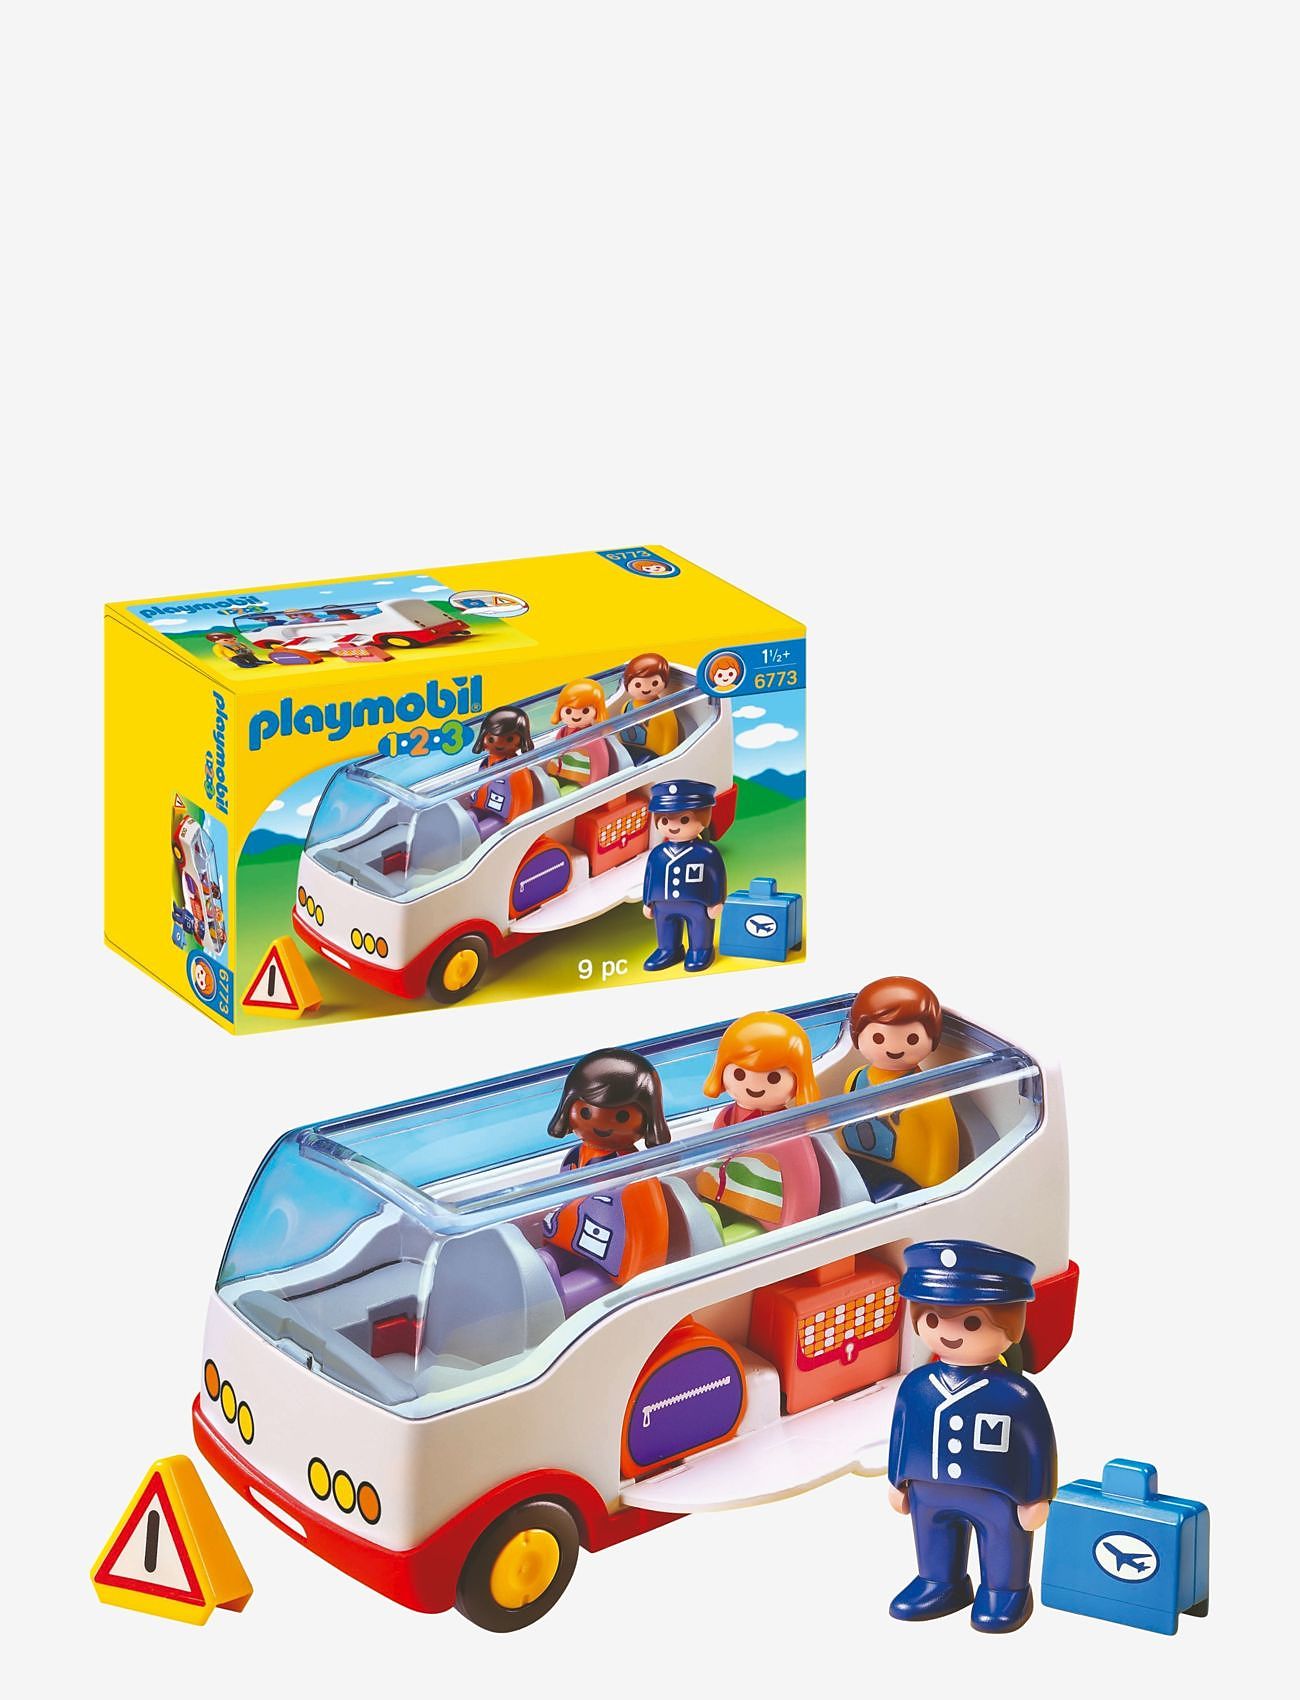 PLAYMOBIL - PLAYMOBIL 1.2.3 Buss - 6773 - playmobil 1.2.3 - multicolored - 0